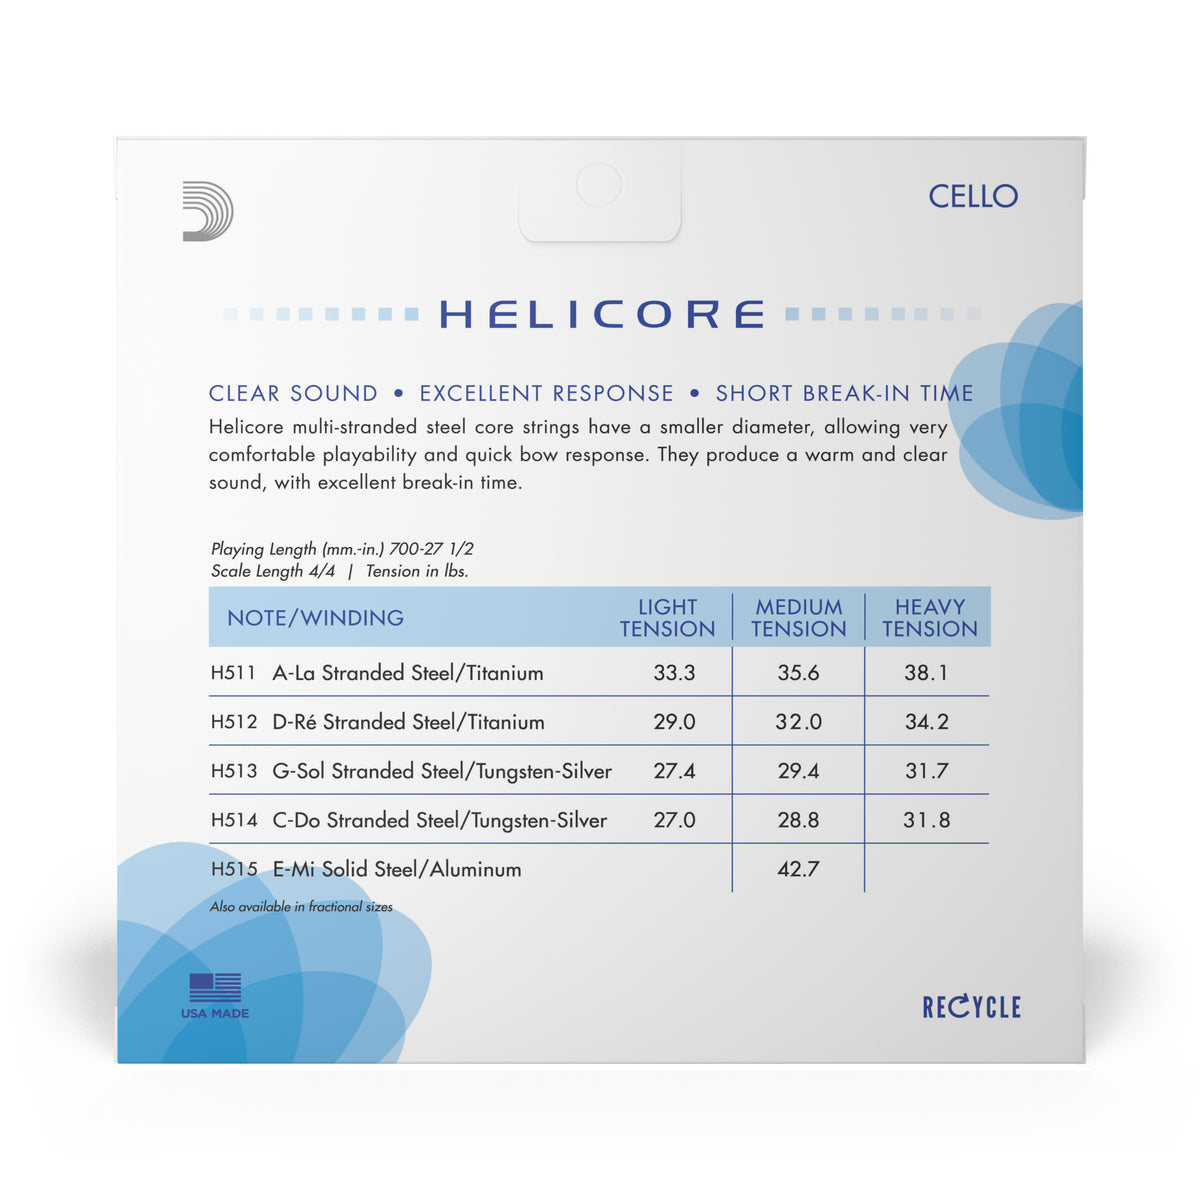 Helicore 4/4 Cello Satz medium